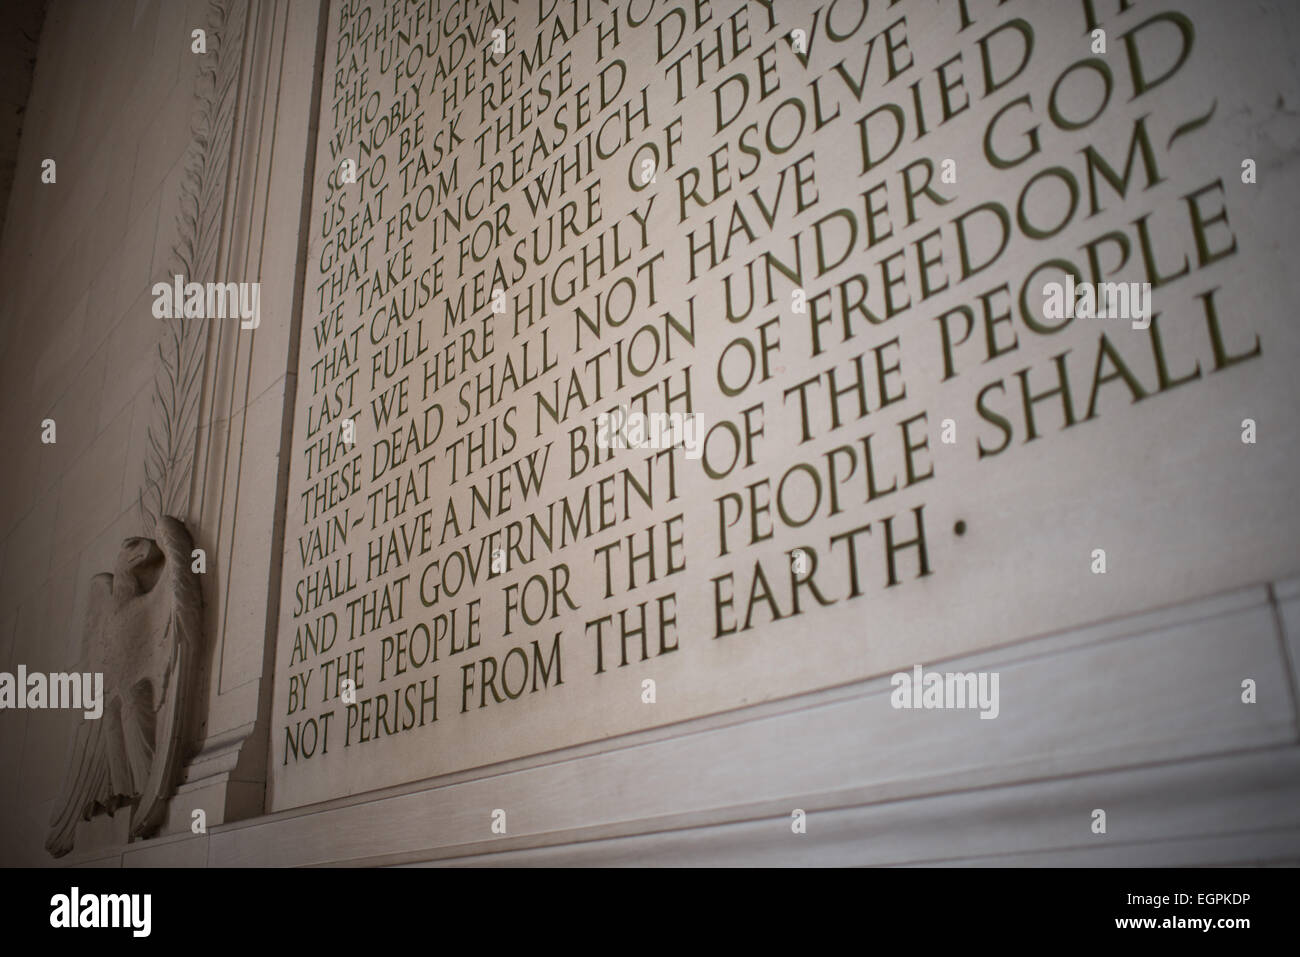 WASHINGTON DC, USA - Der Text der Gettysburg Address in der südlichen Mauer in das Lincoln Memorial in Washington DC geätzt. Stockfoto